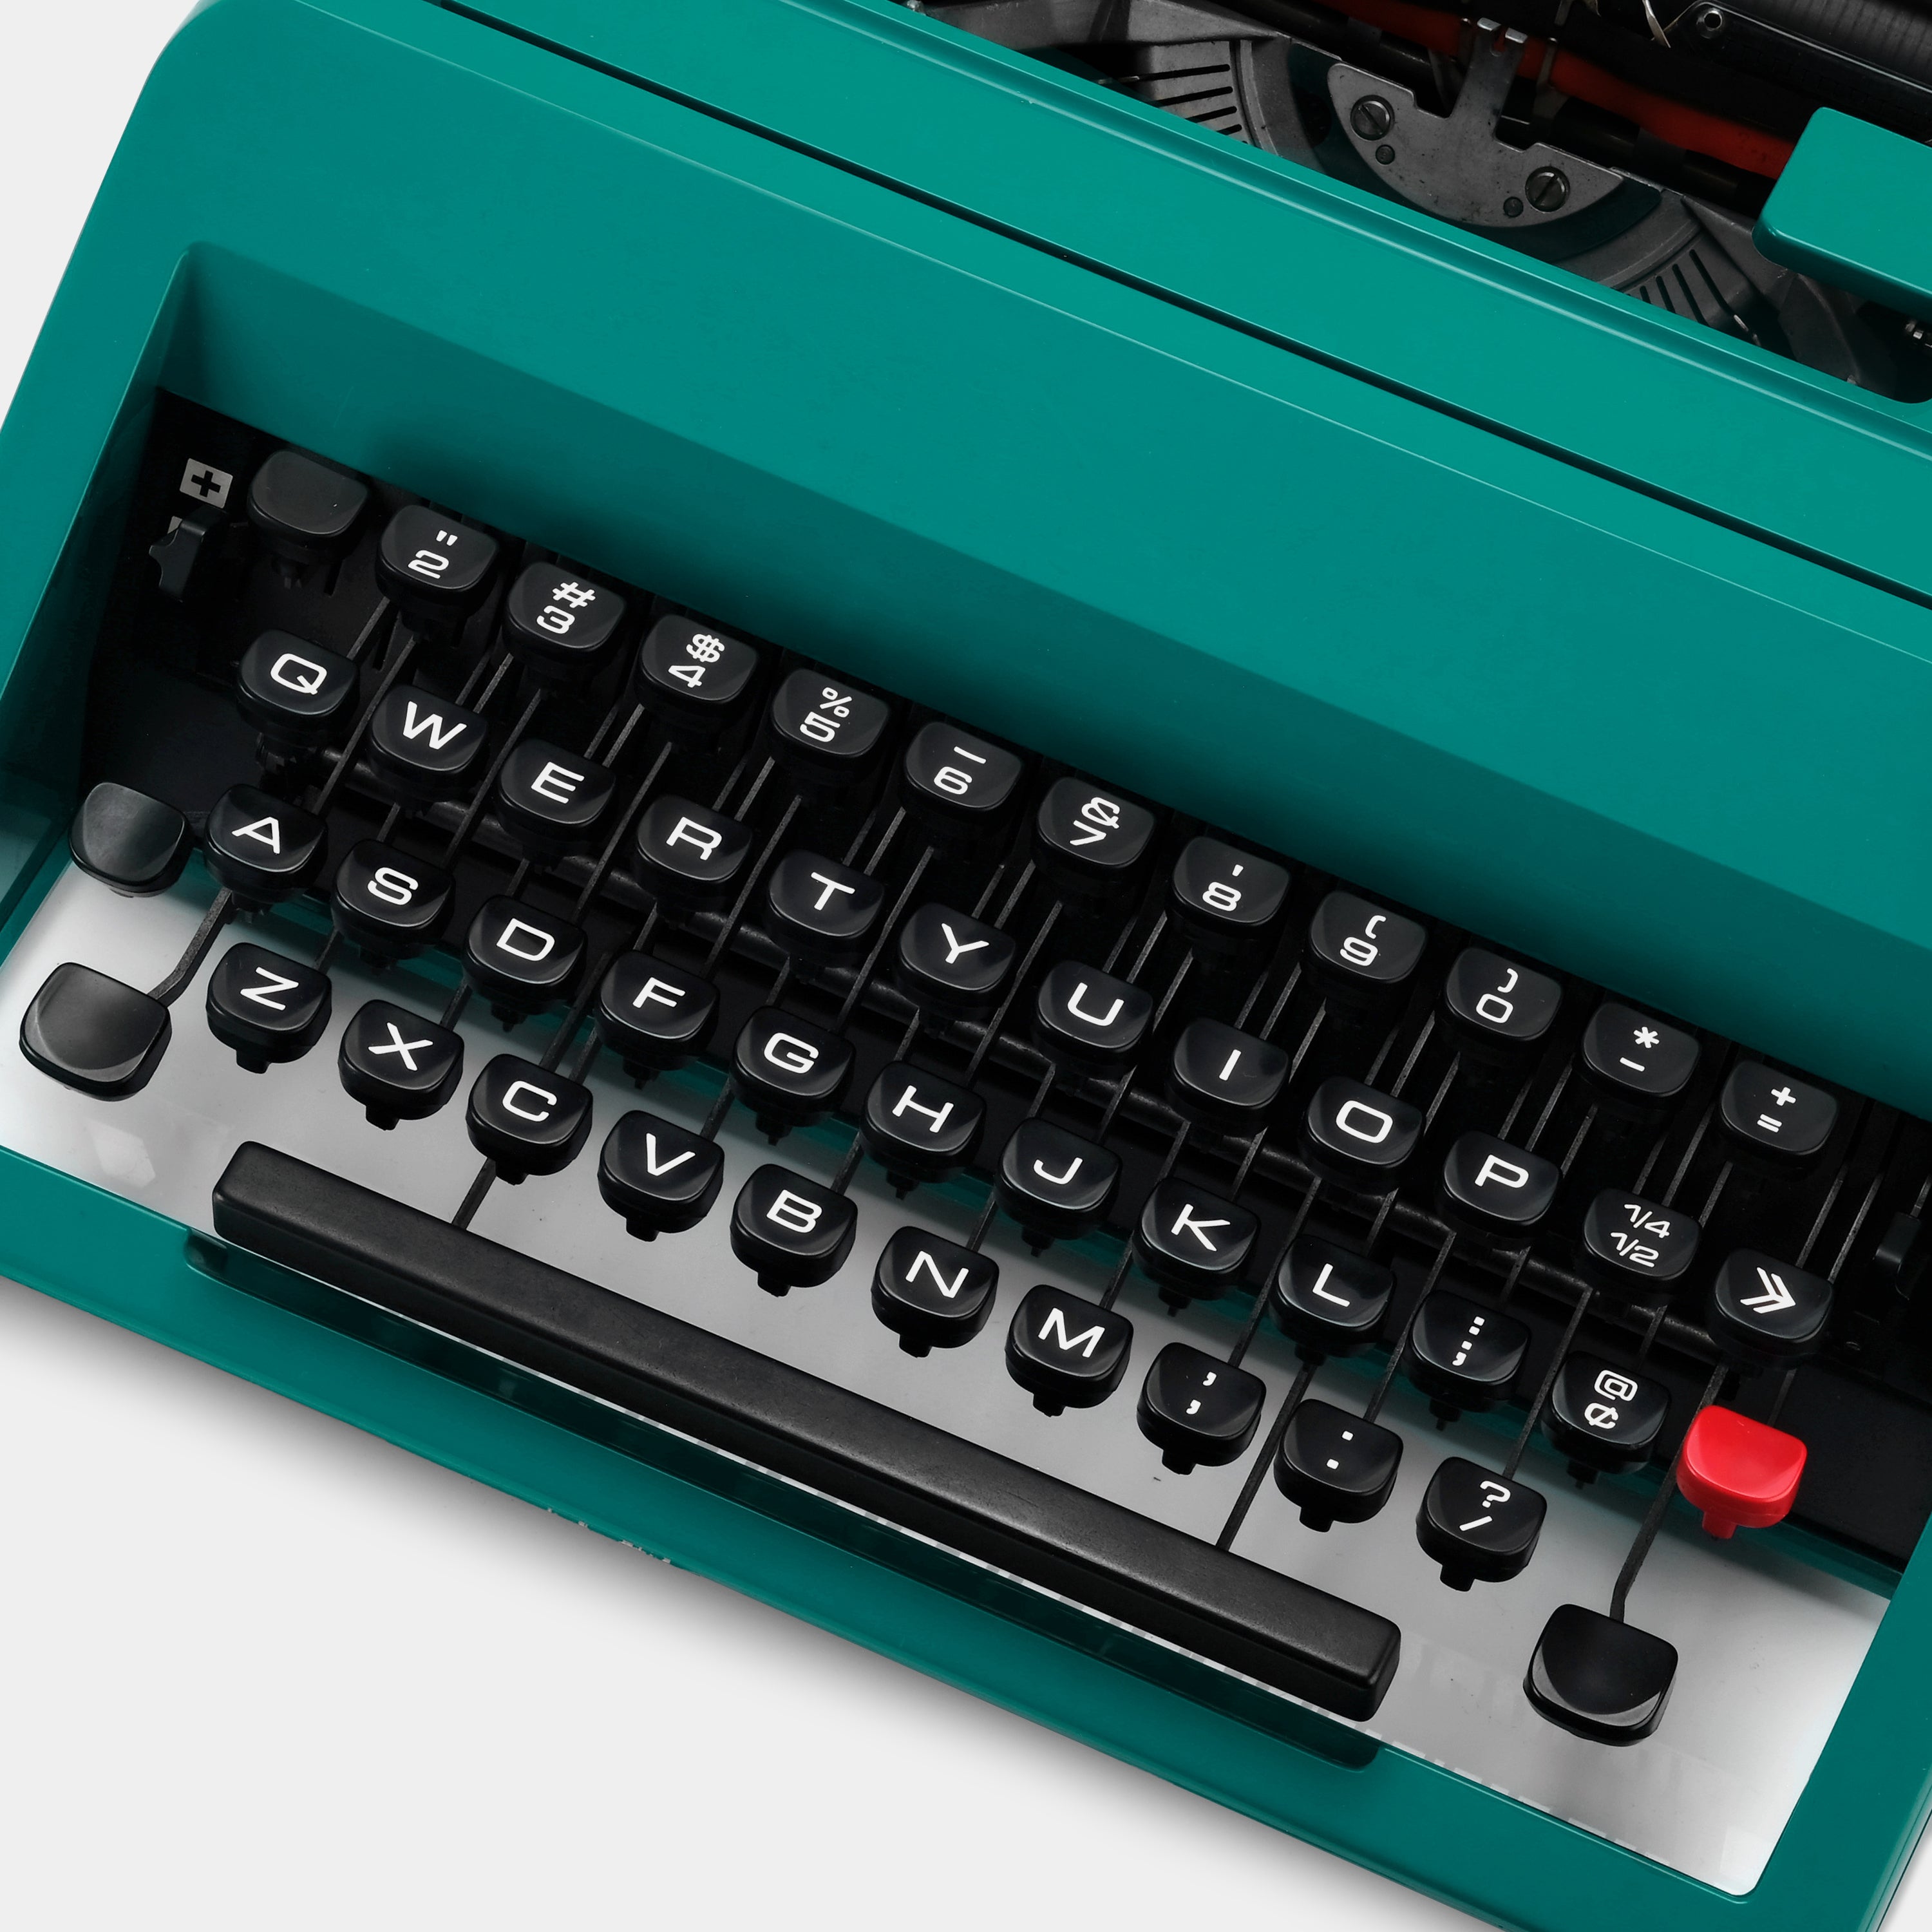 Olivetti Underwood Studio 45 Turquoise Manual Typewriter and Case